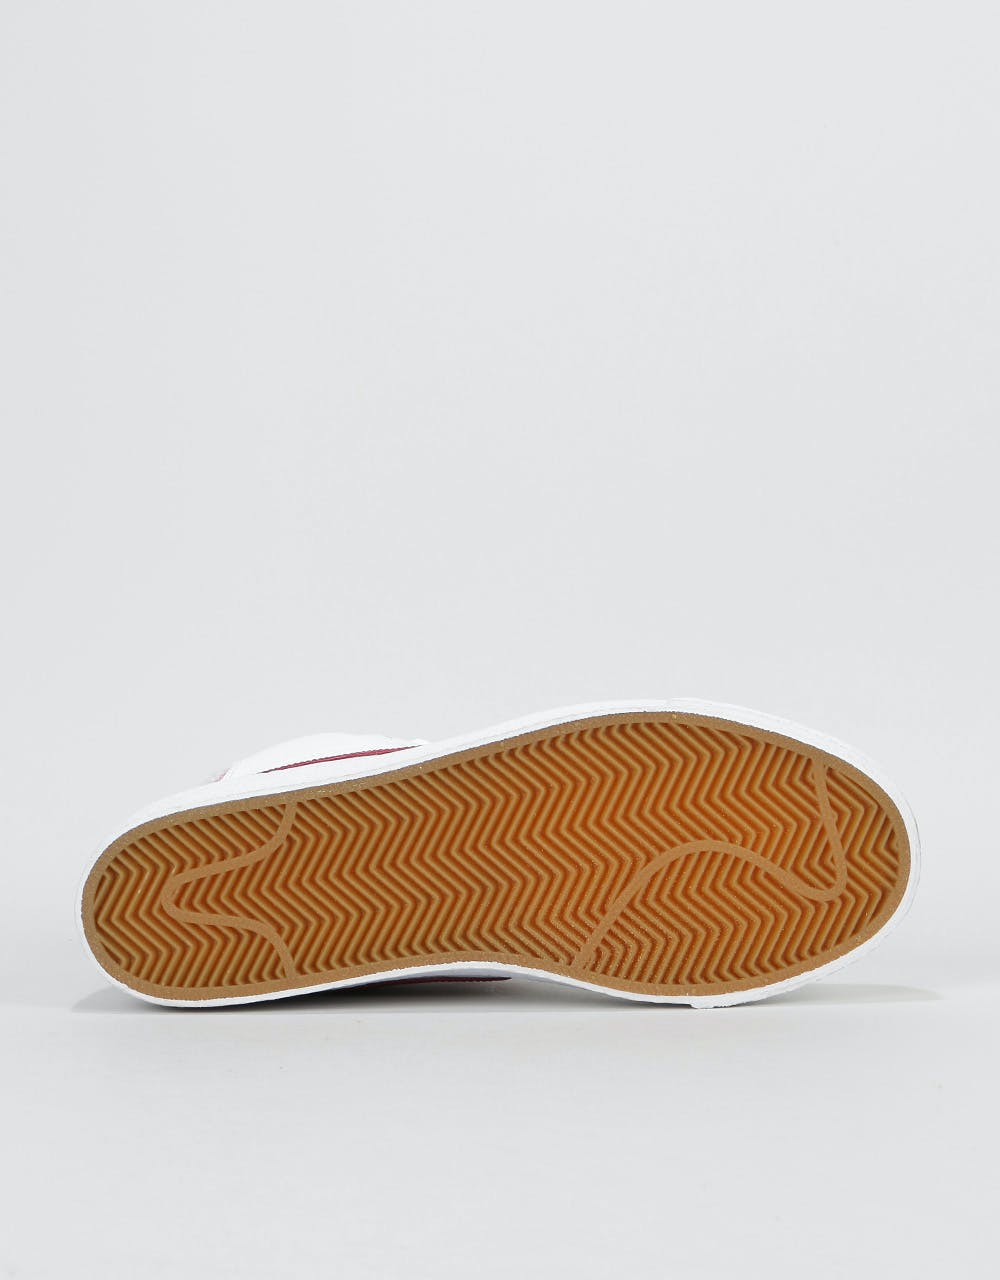 Nike SB Zoom Blazer Mid Premium Skate Shoes - White/Team Red